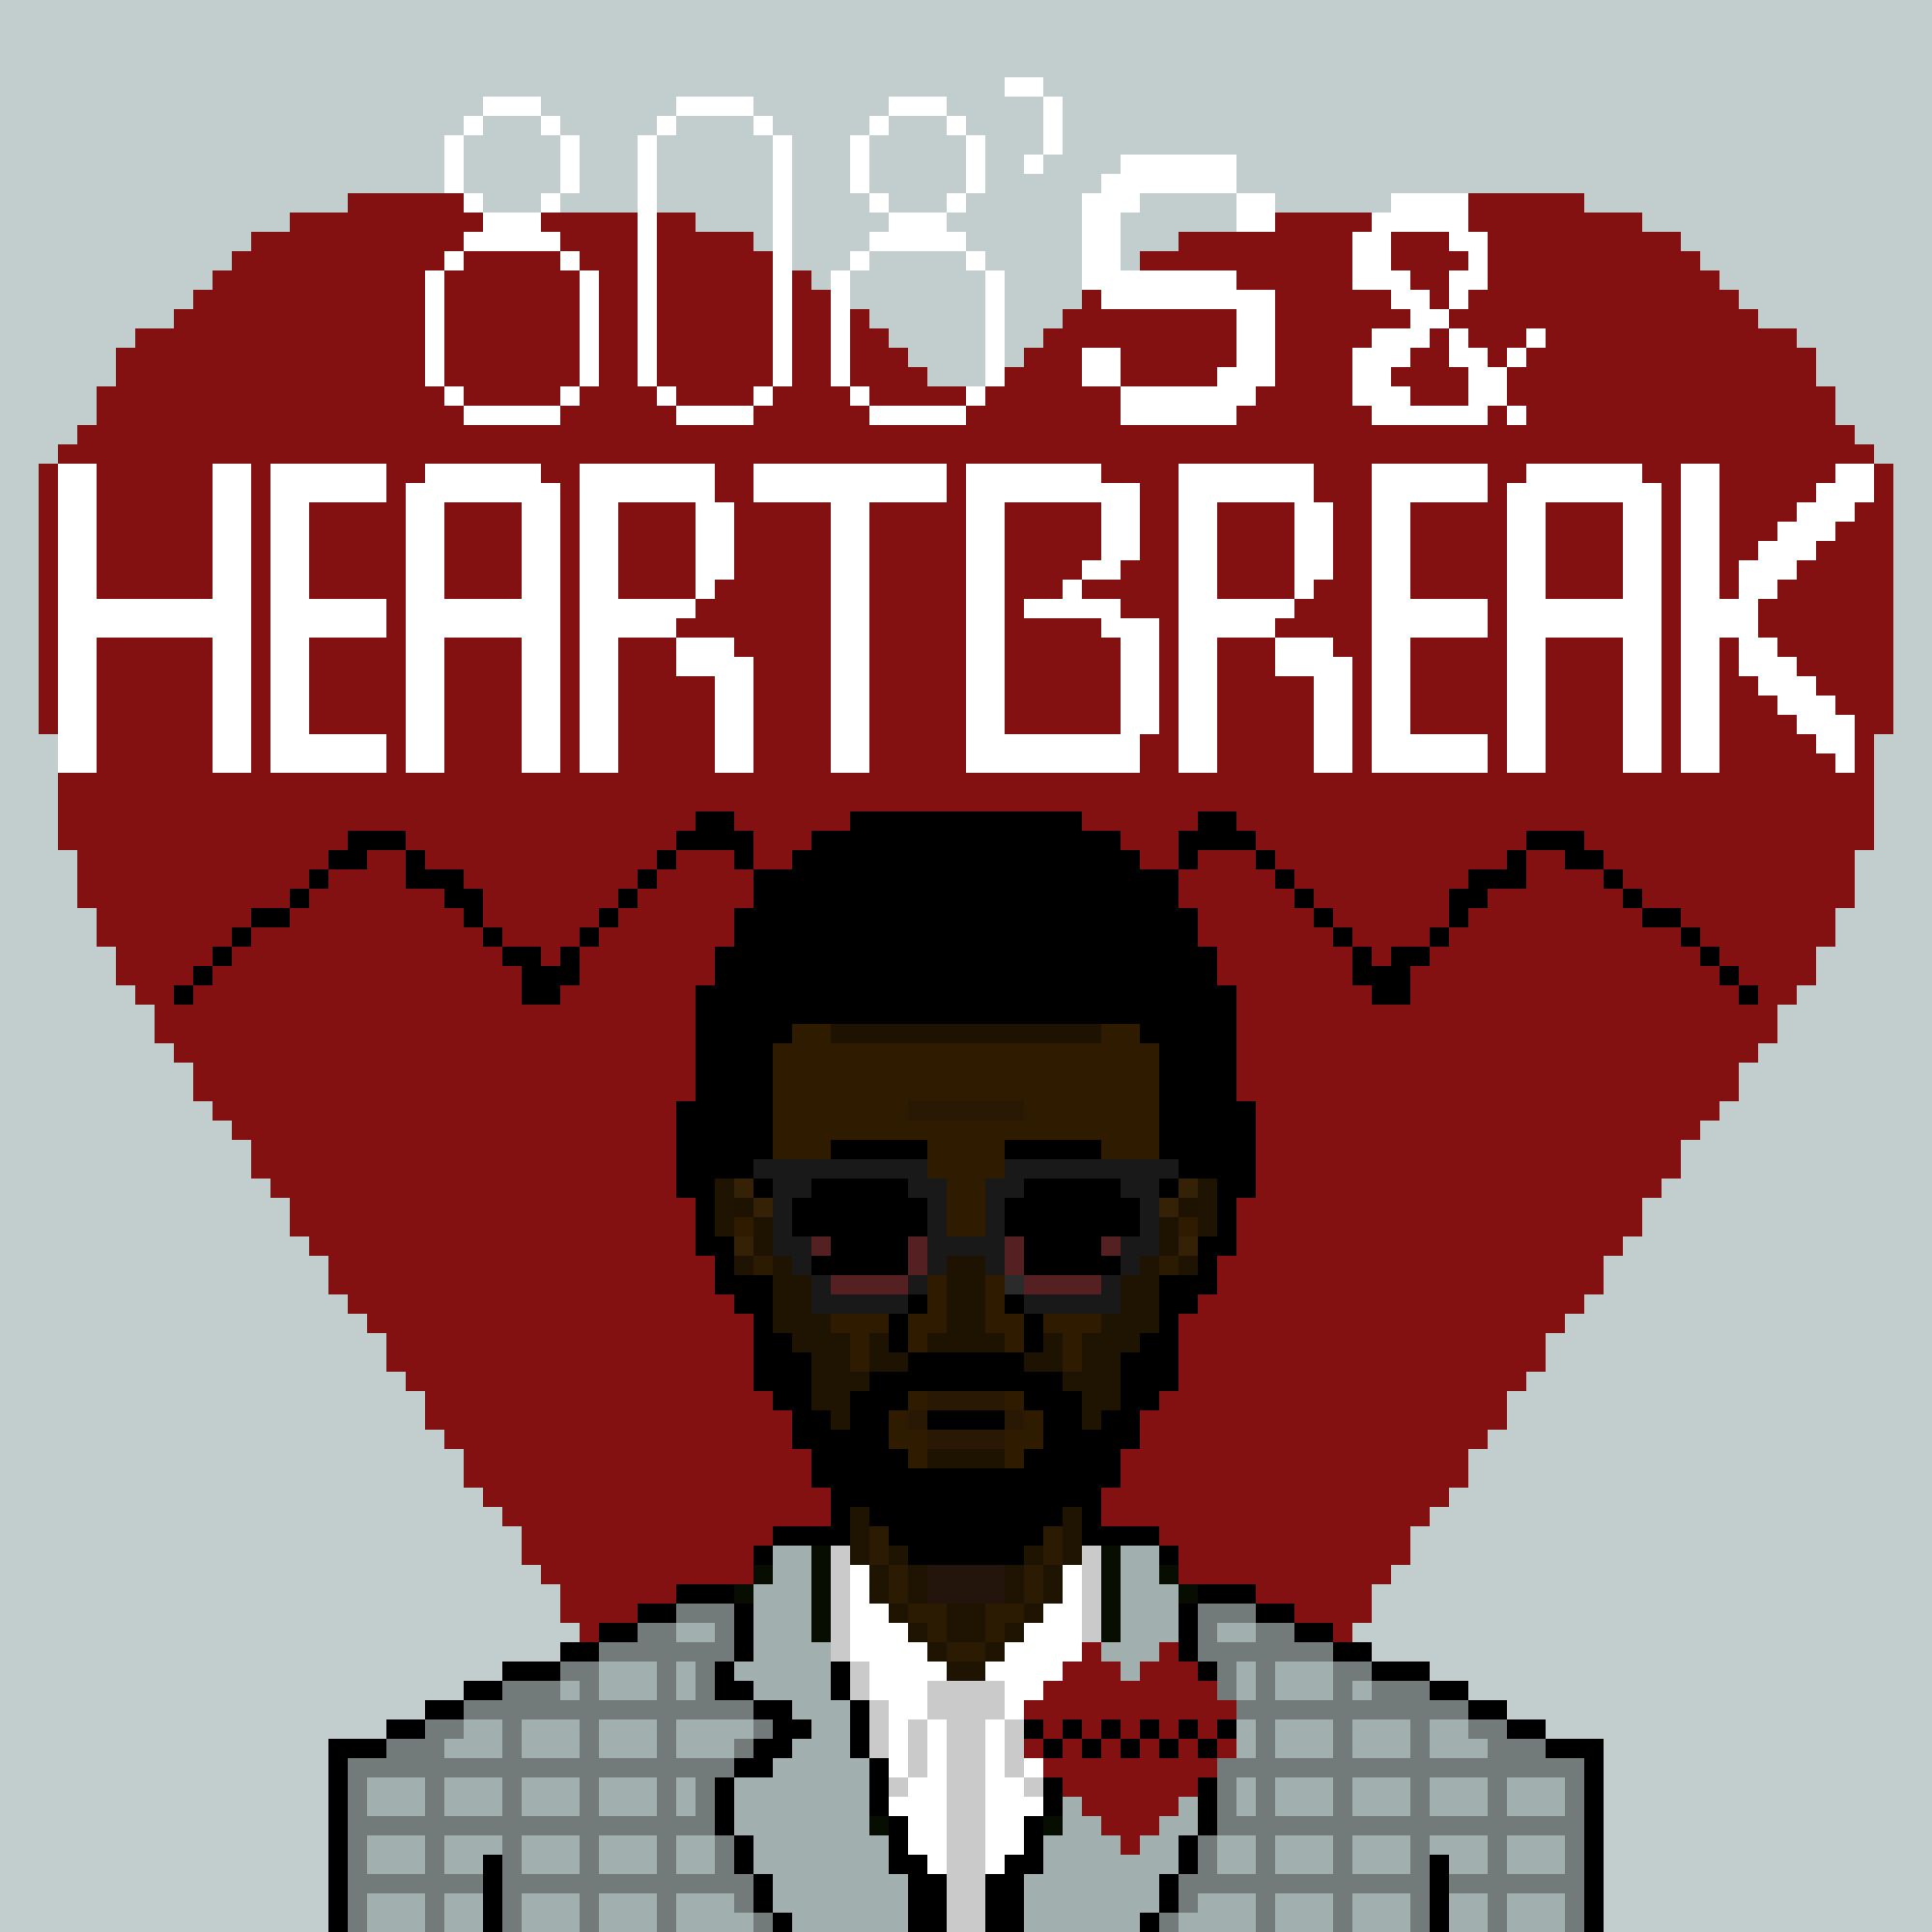 808's & Heartbreak